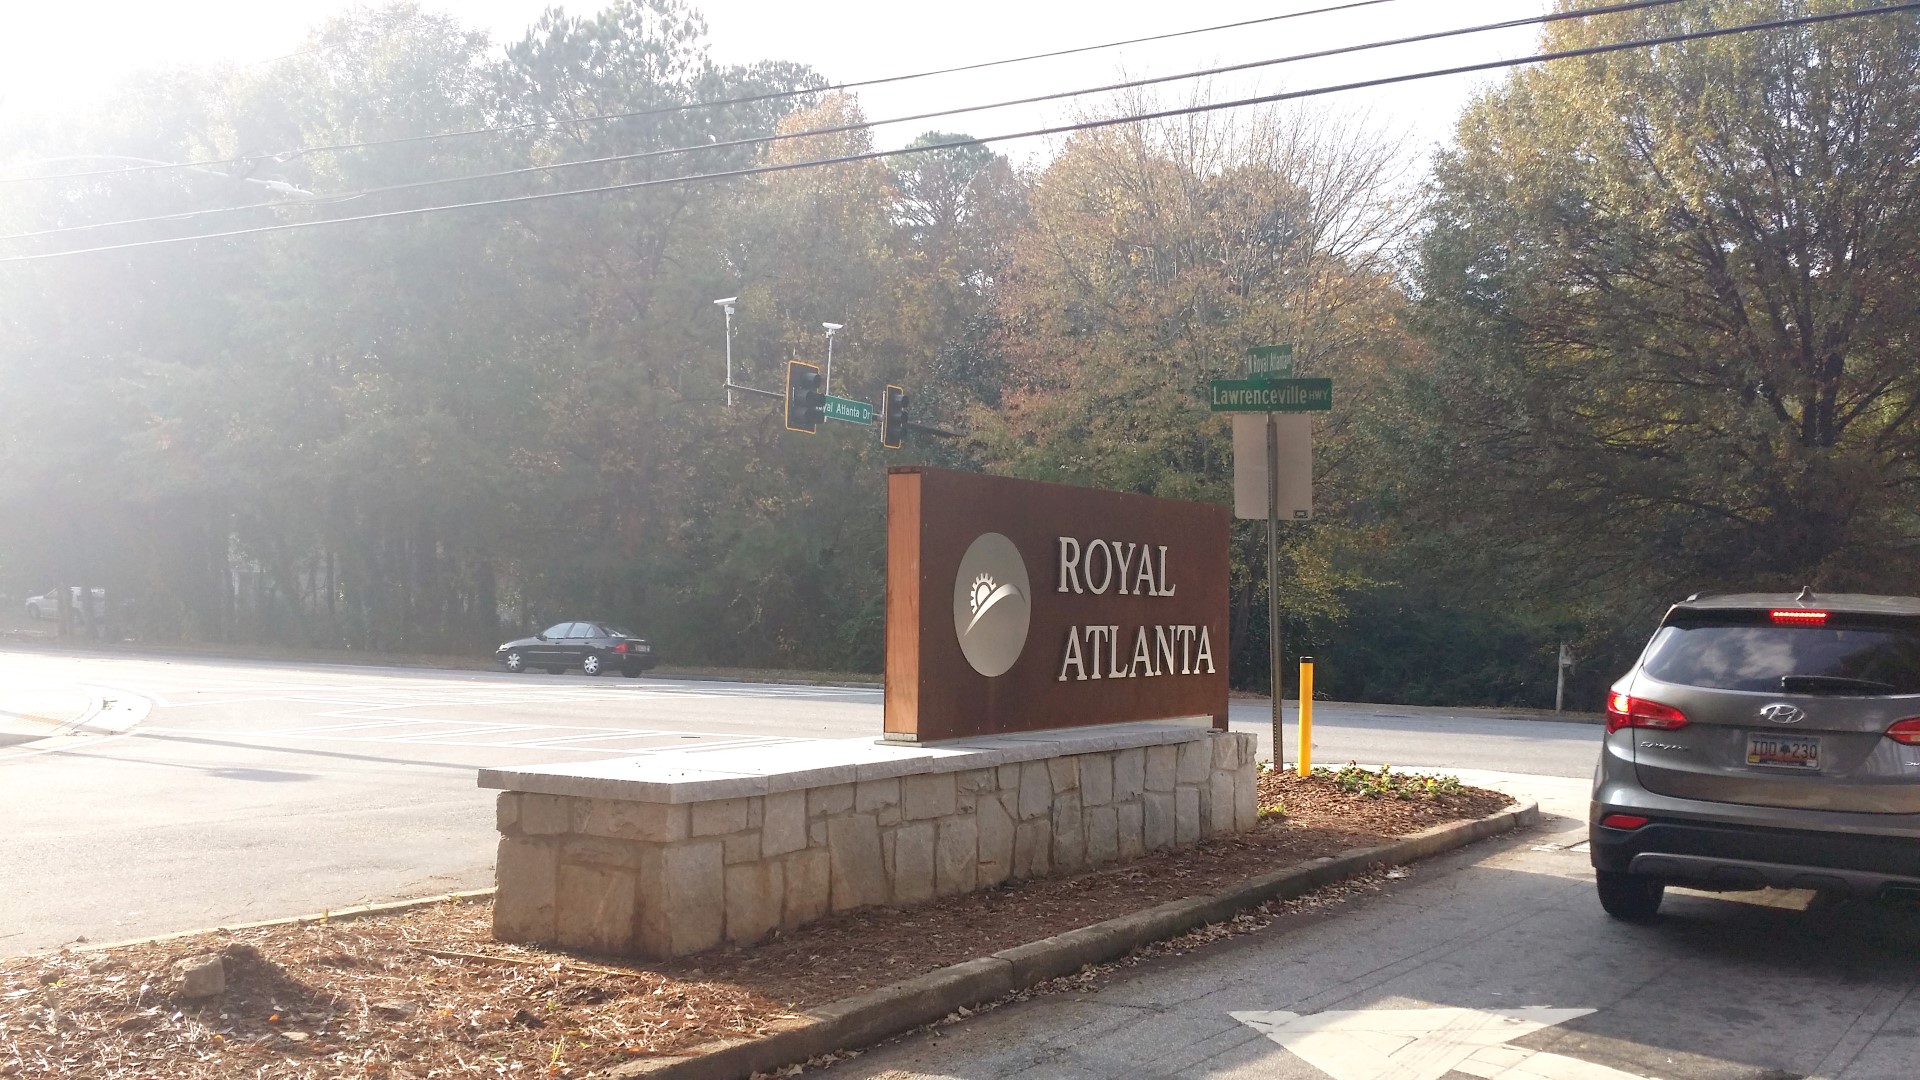 Royal Atlanta